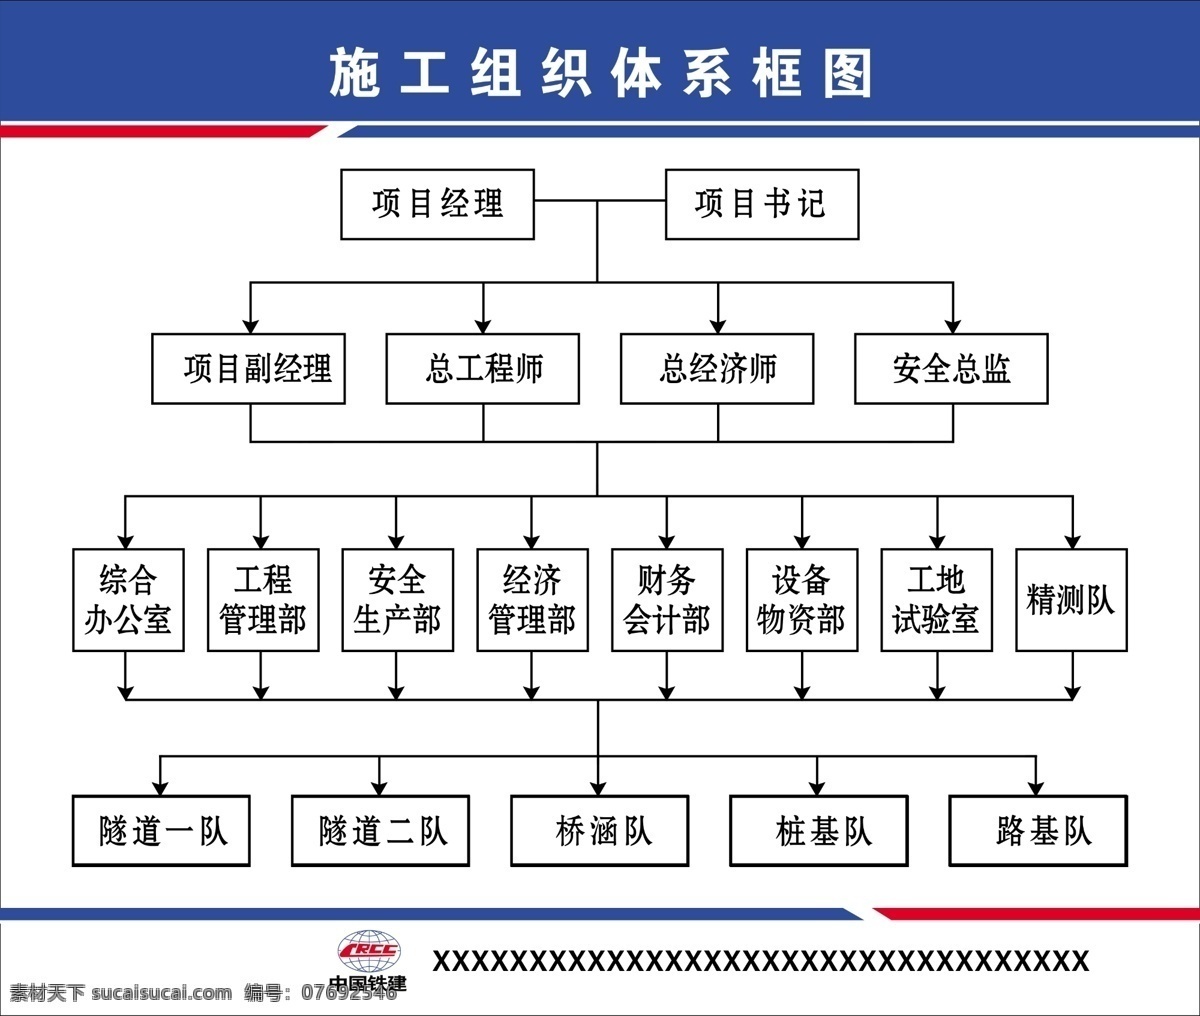 施工 组织体系 框图 施工图 组织机构 体系框图 中国铁建 工地